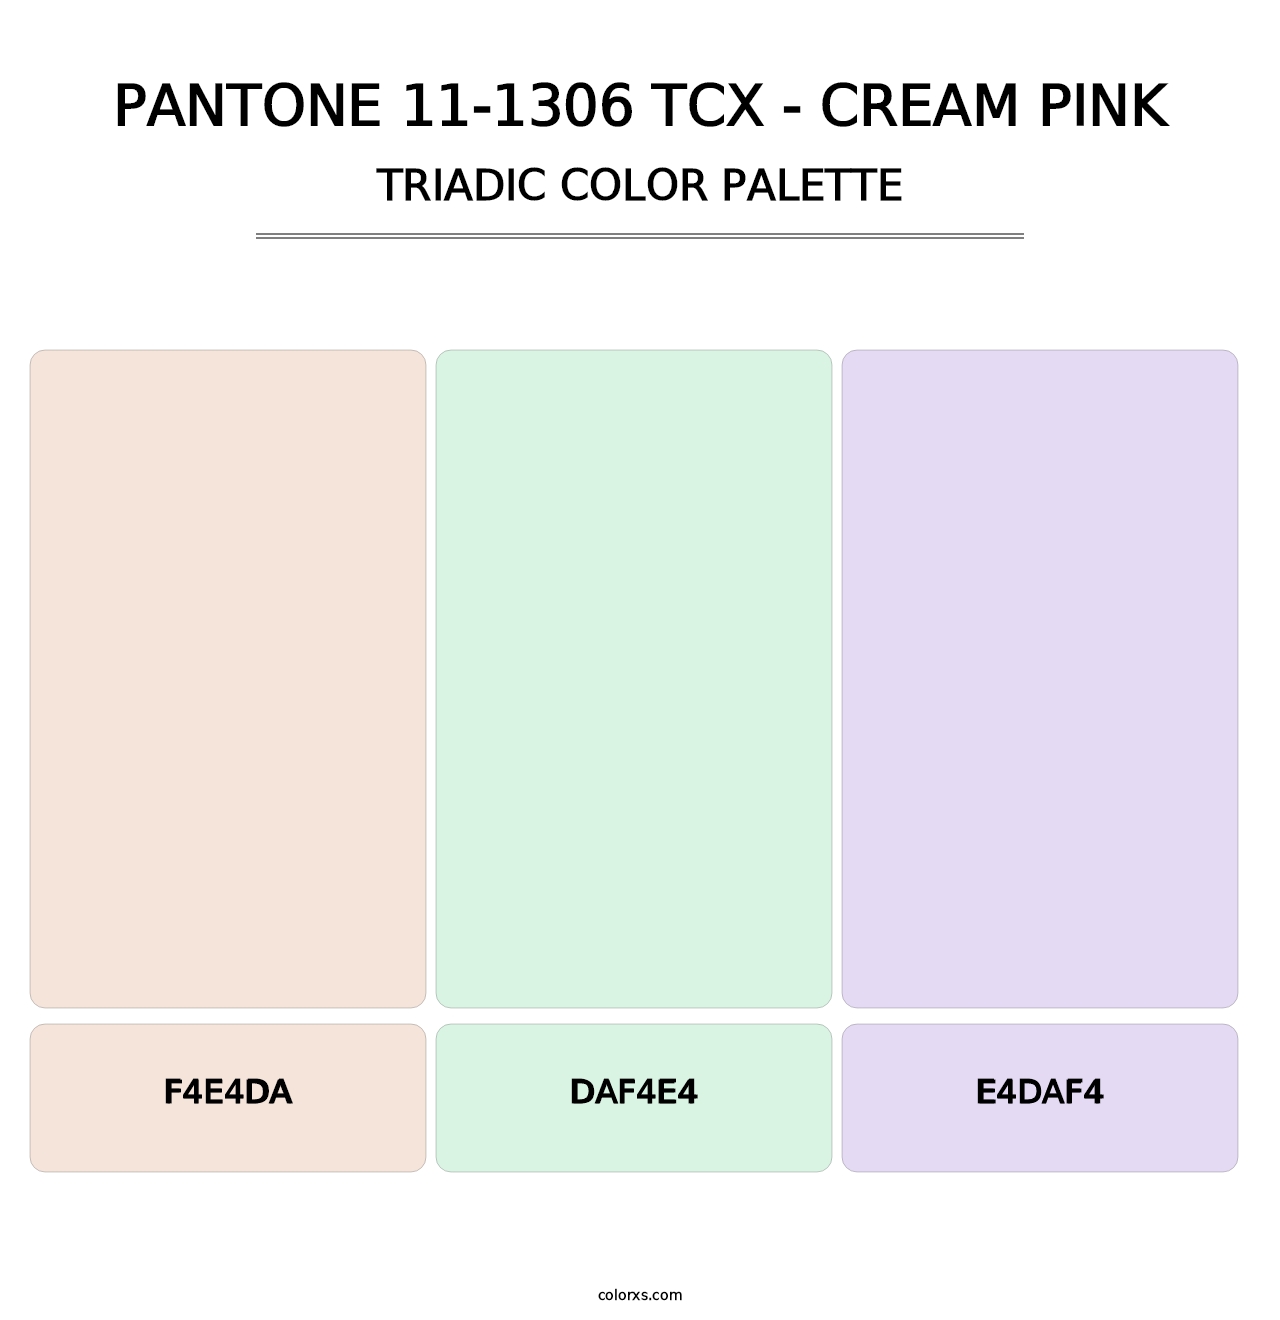 PANTONE 11-1306 TCX - Cream Pink - Triadic Color Palette